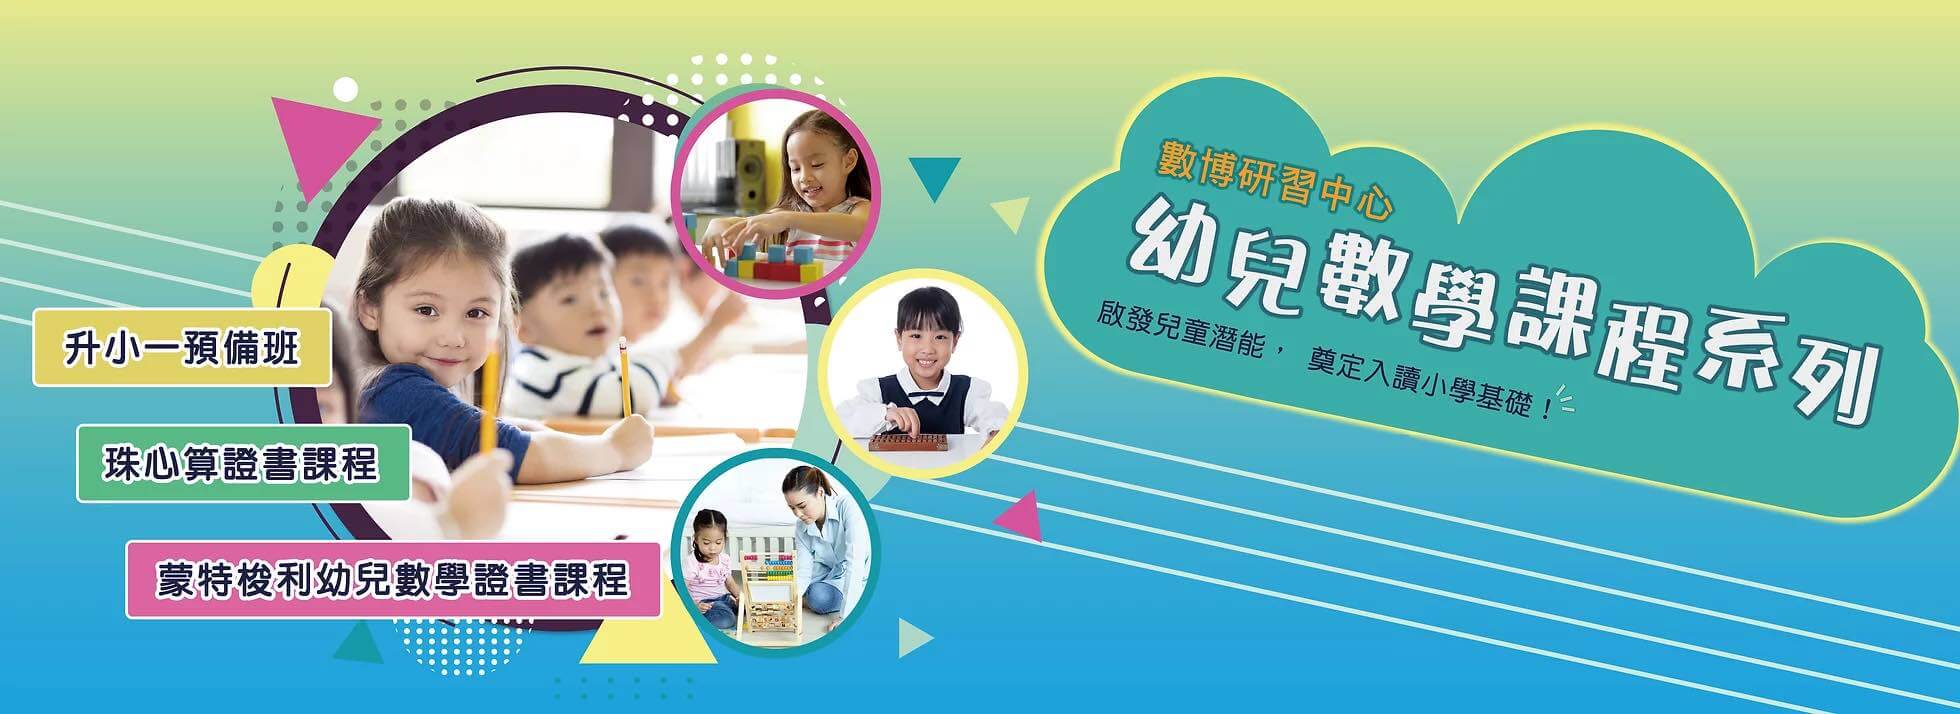 數博研習中心 Math Blocks Education Centre的特許經營香港區加盟店項目5